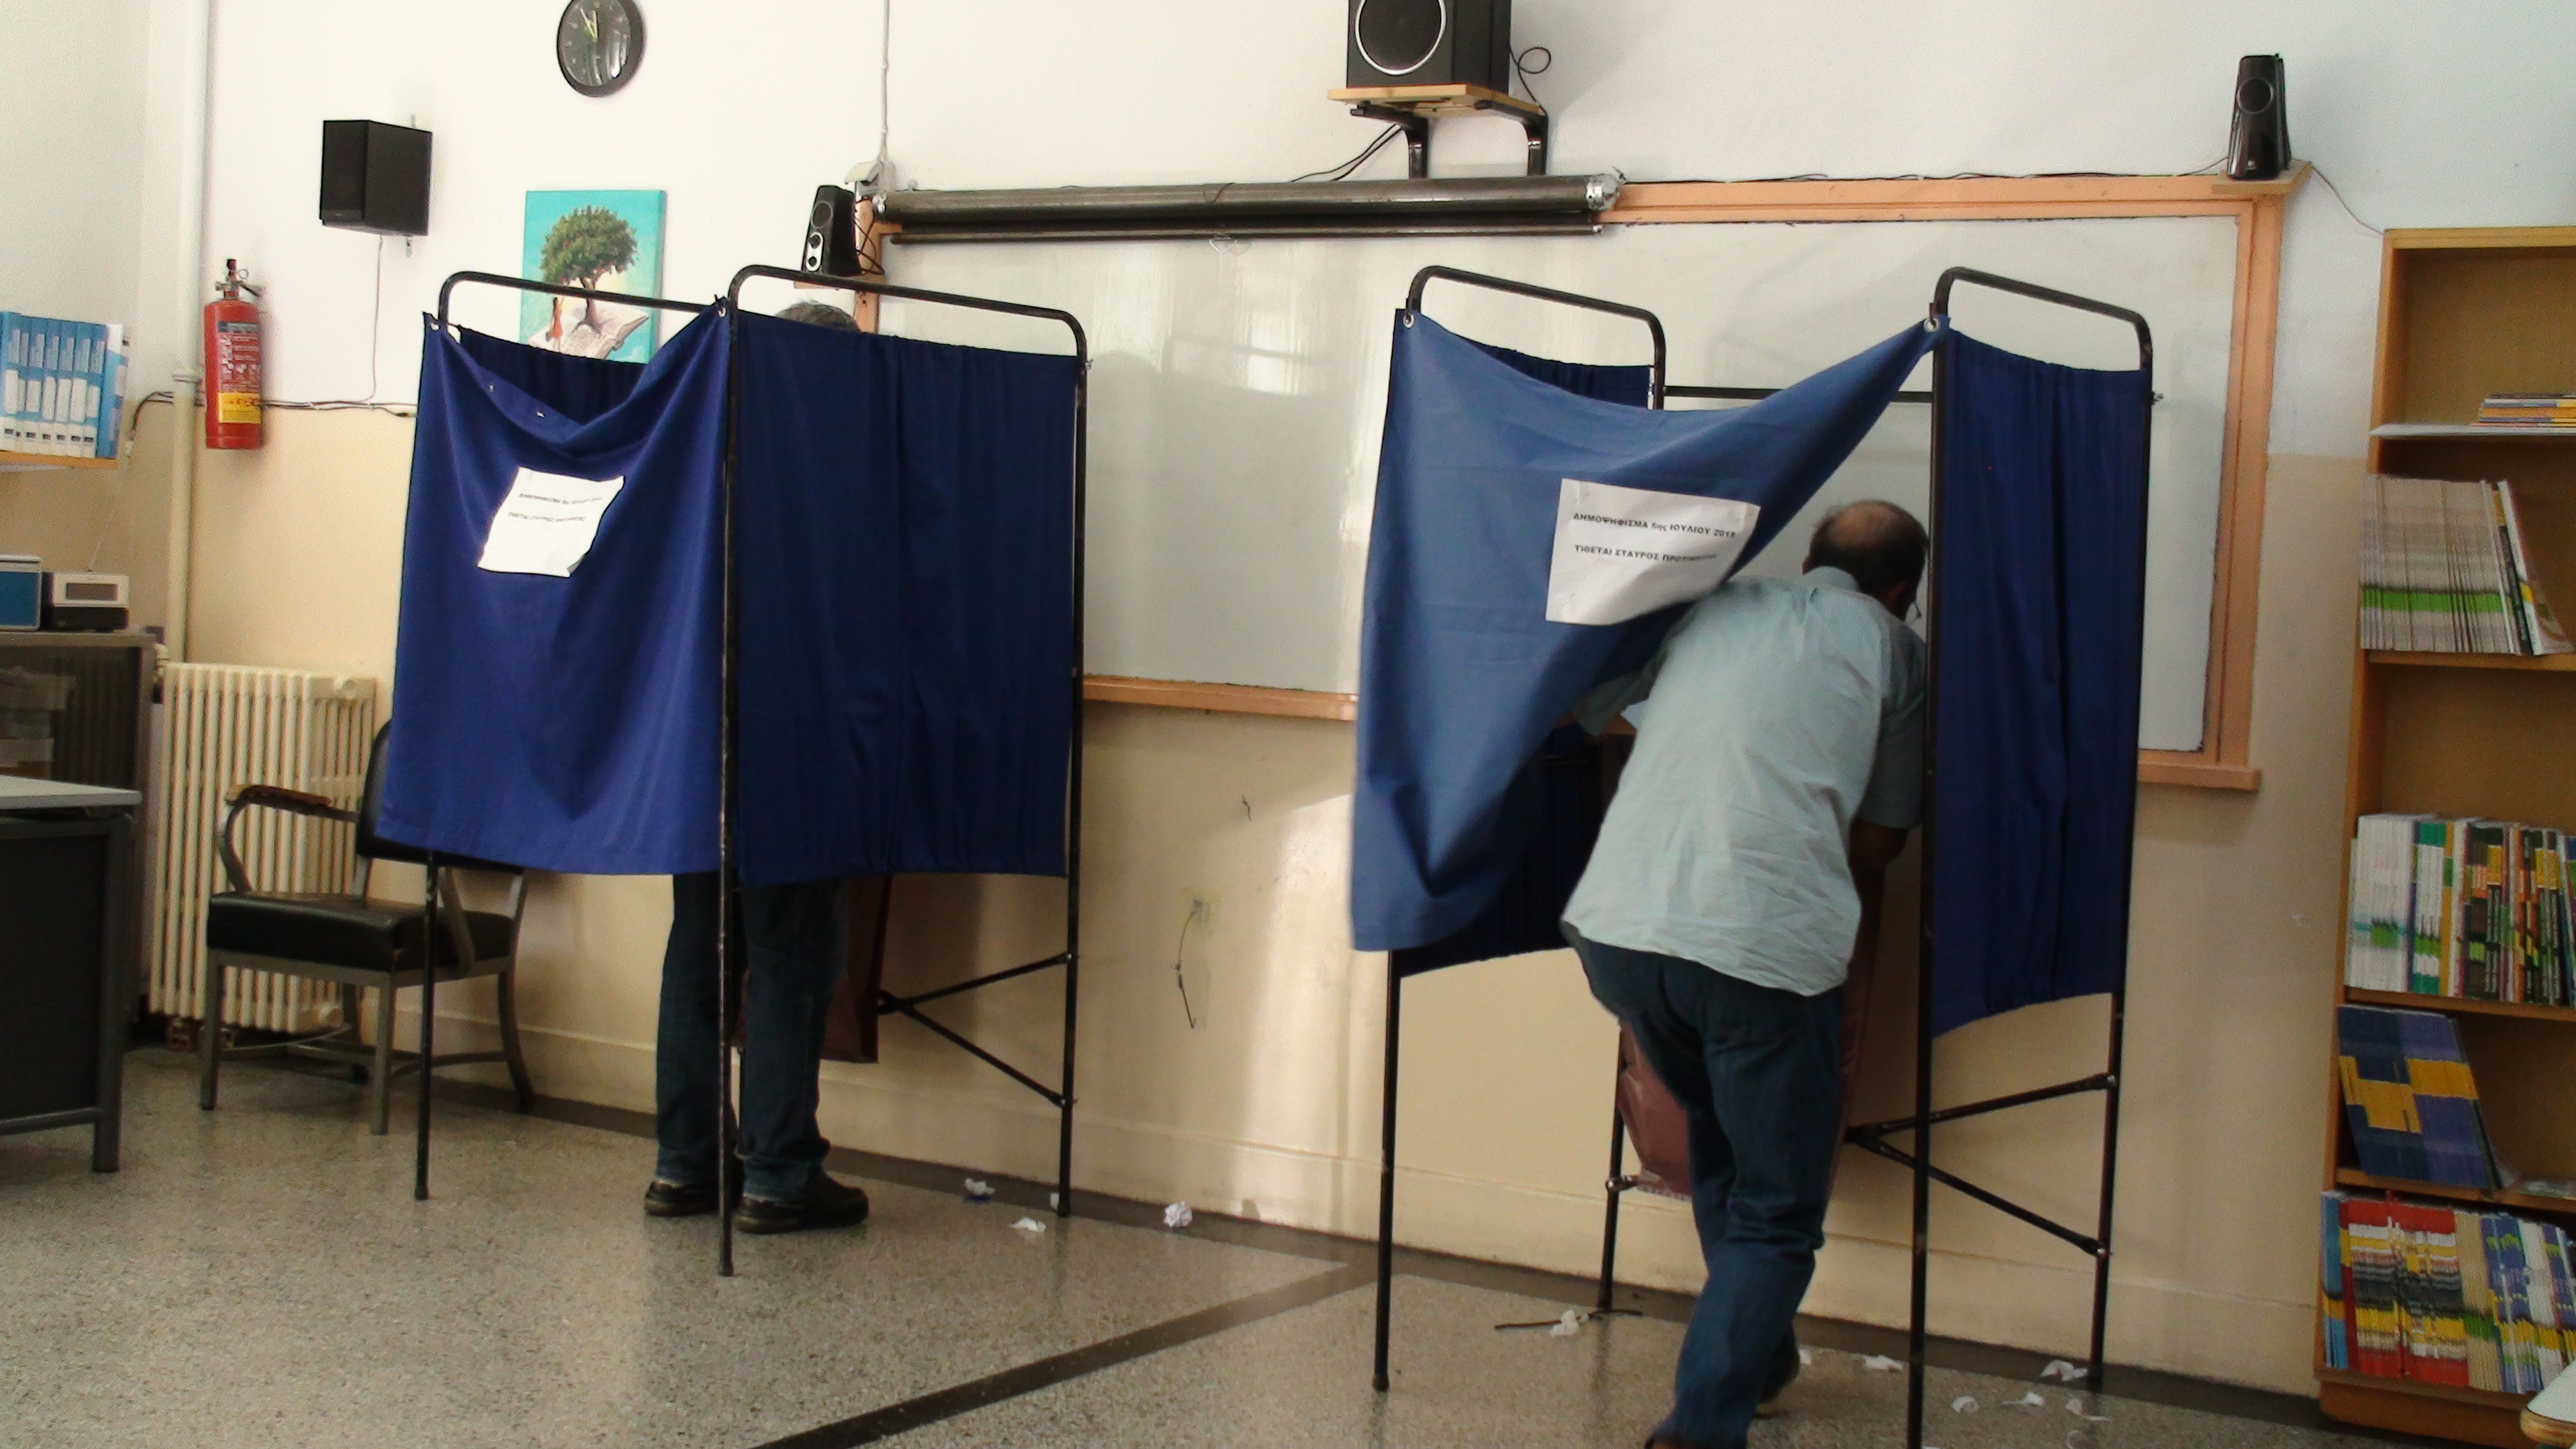 ΥΠΕΣ: Ομαλά η ψηφοφορία σε όλα τα εκλογικά τμήματα